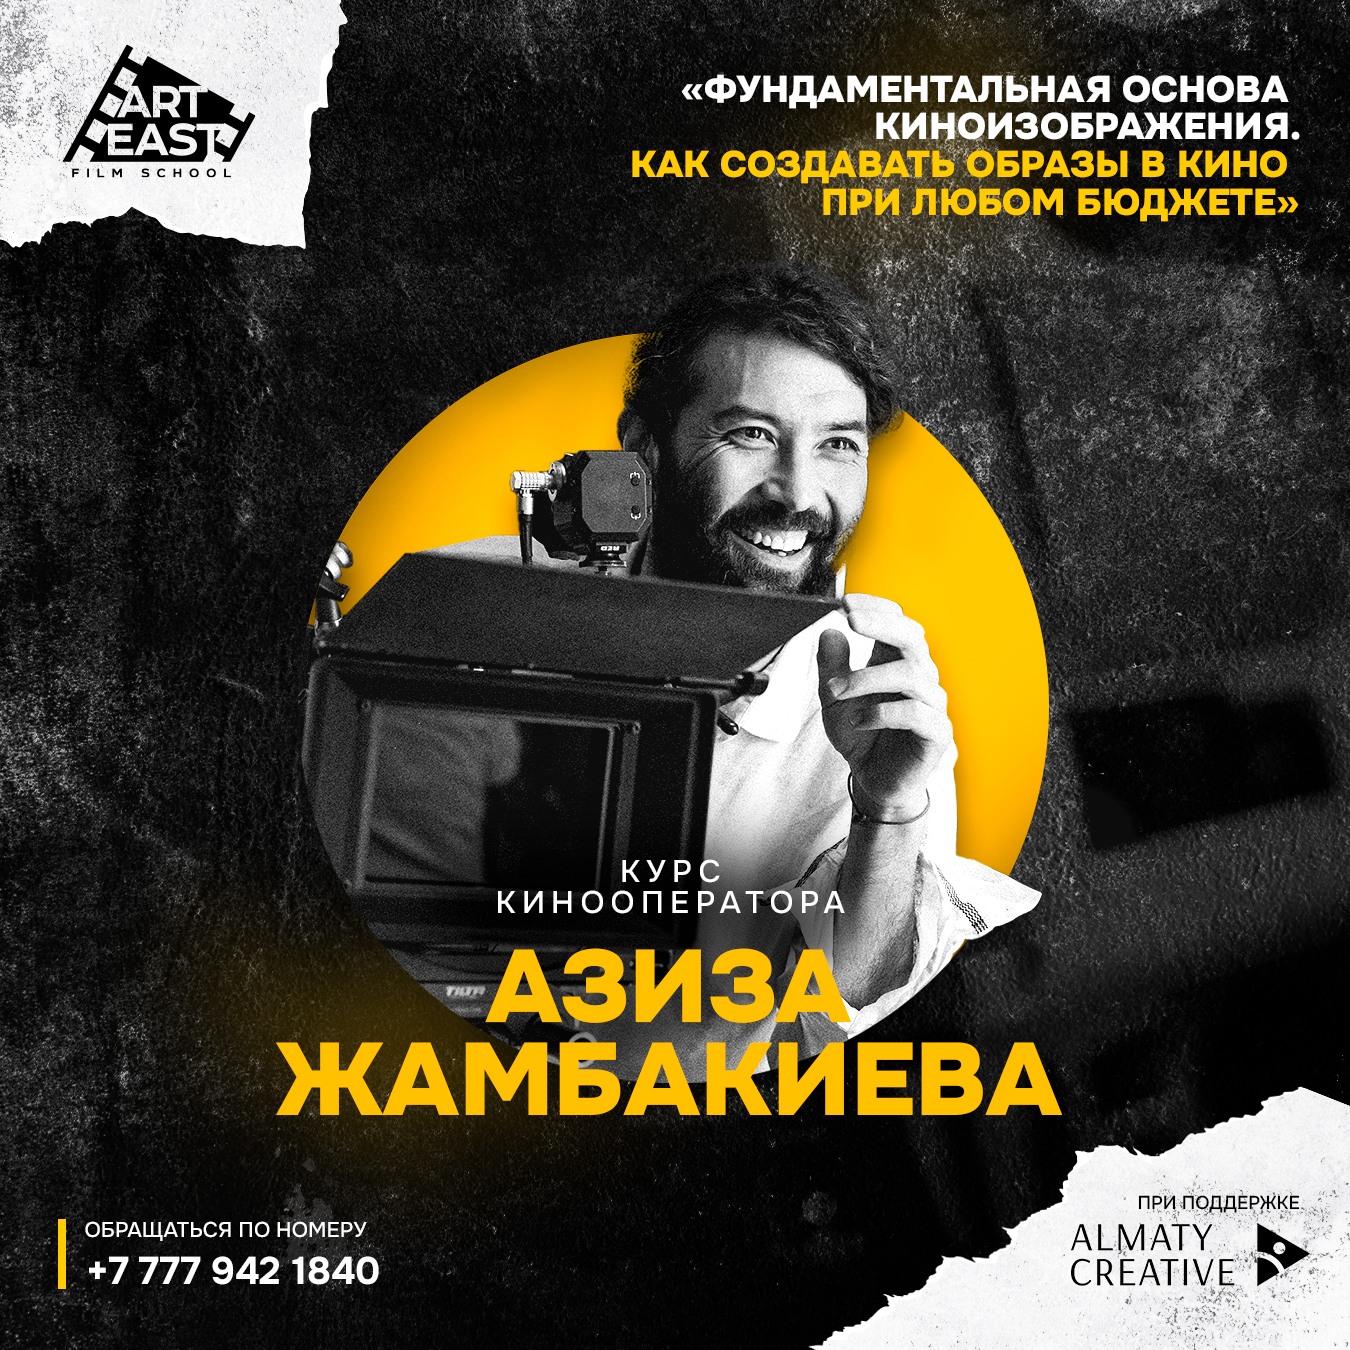 Открыт набор на курс кинооператорского мастерства под руководством Азиза Жамбакиева